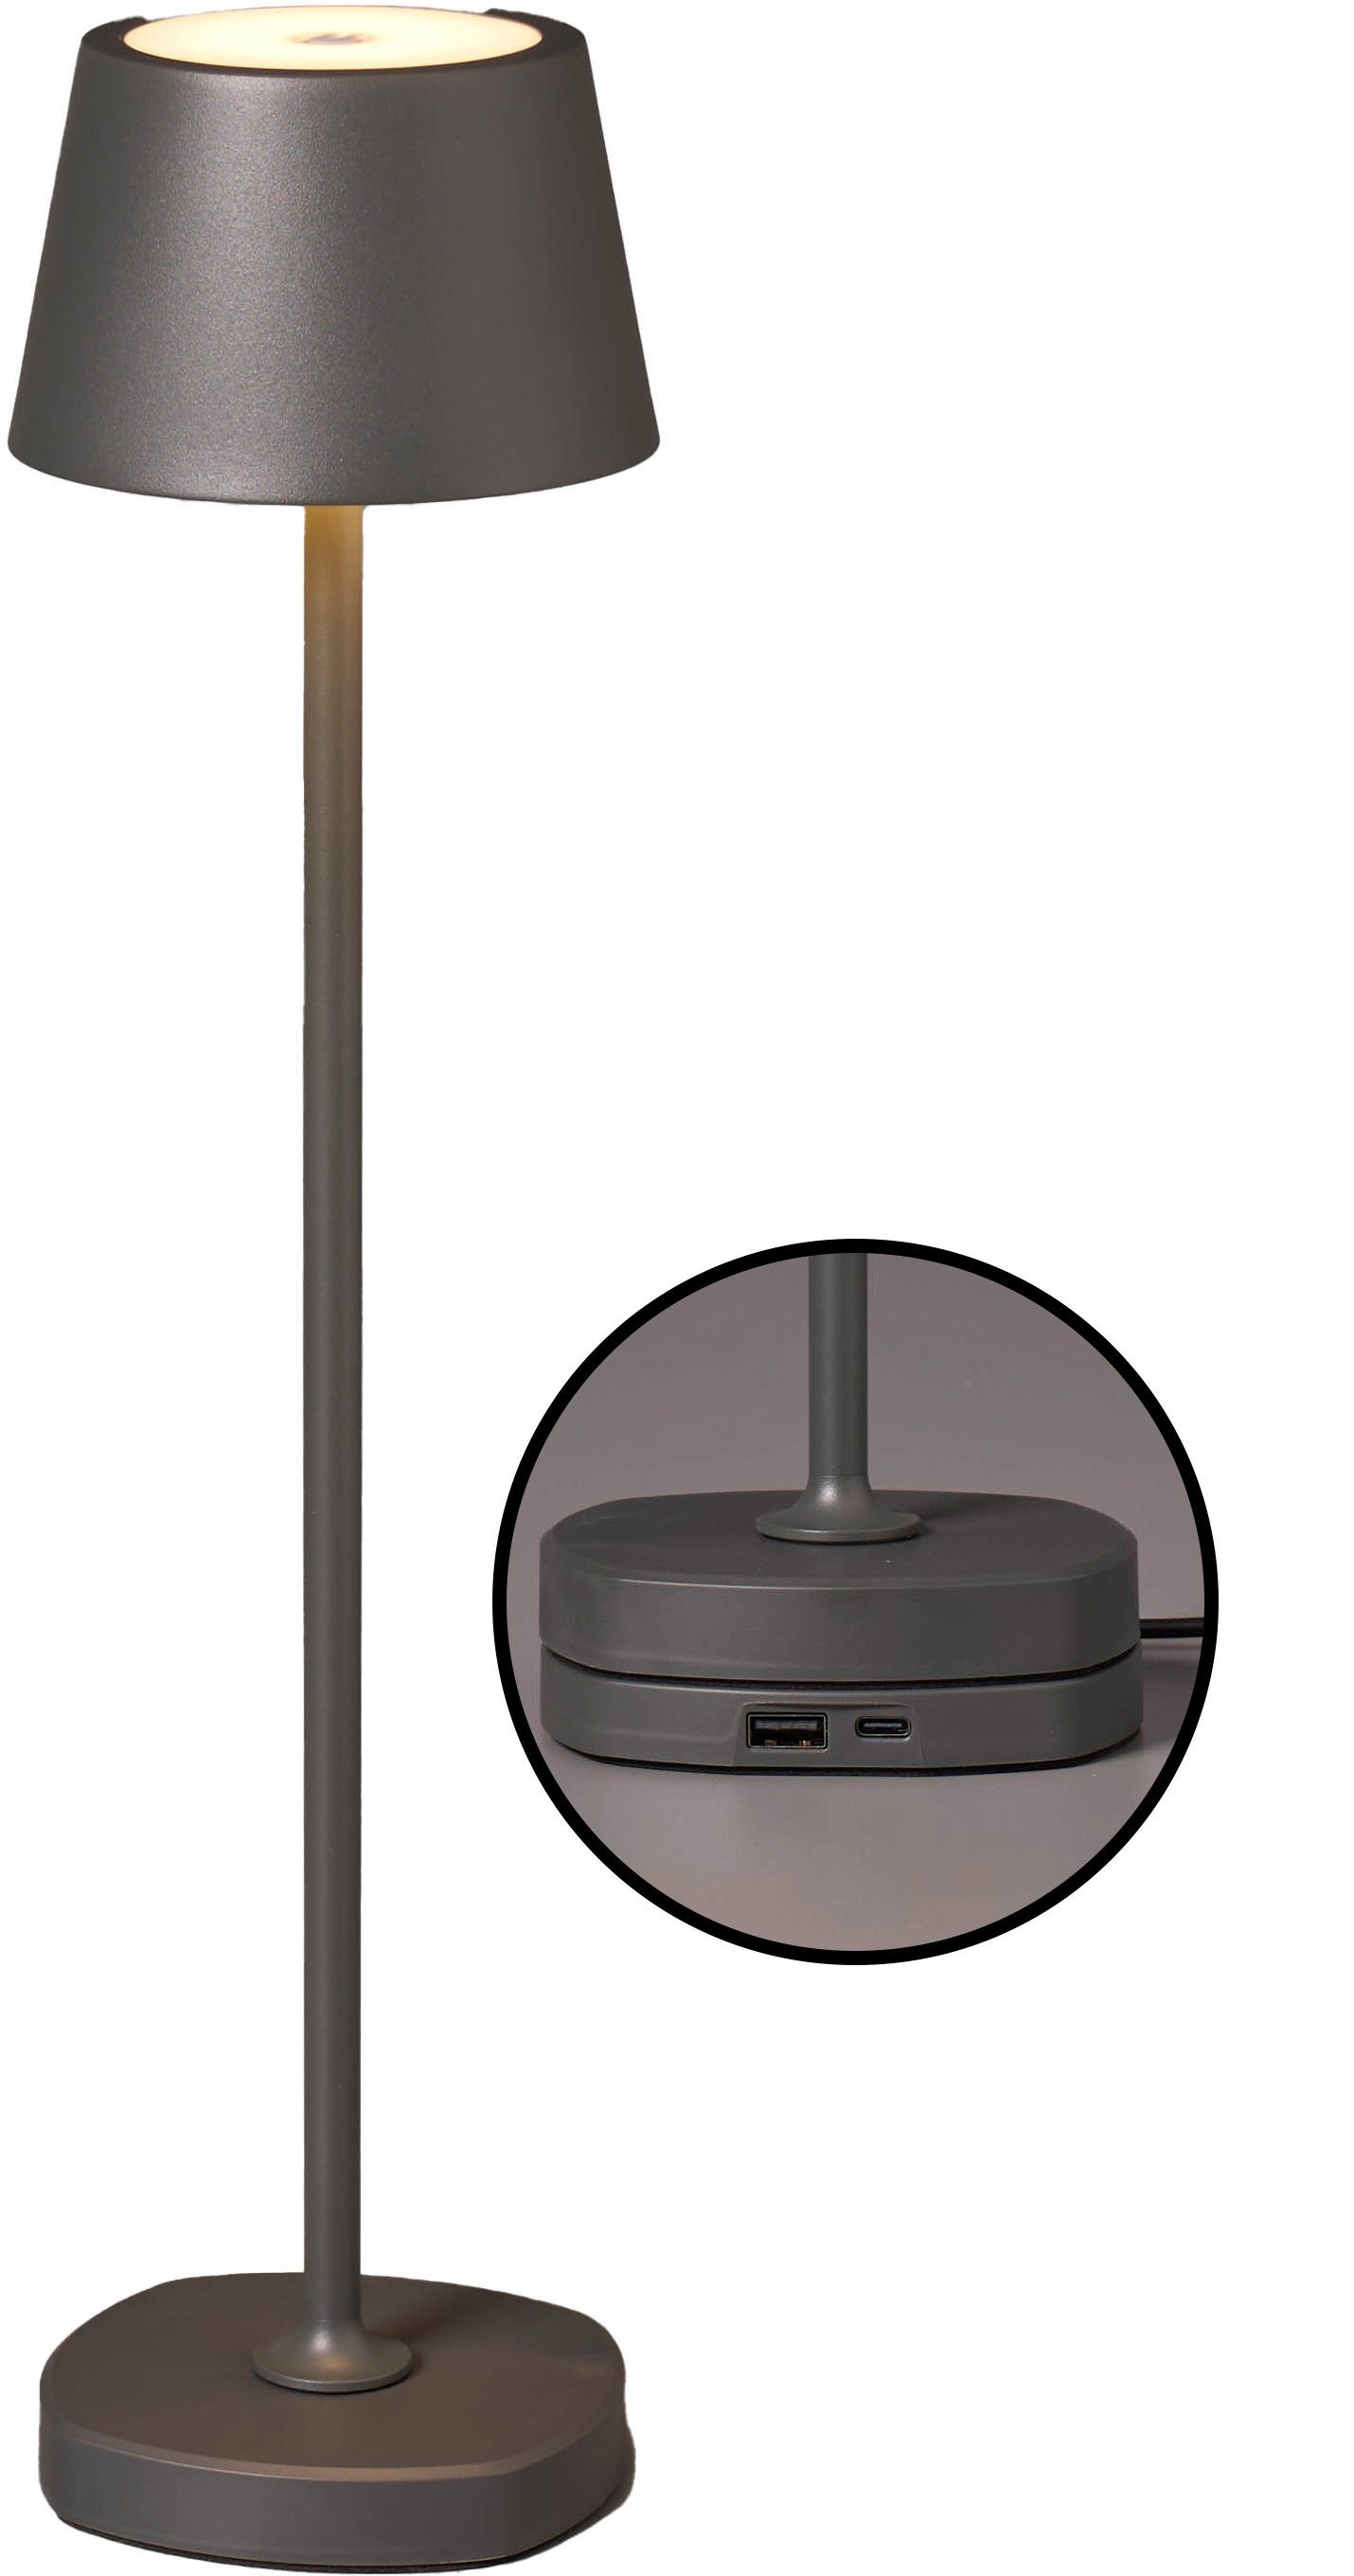 Akku hoch max. grau Ladestation Tischlampe warmweiße mit 45cm LED Northpoint Tischleuchte dimmbar